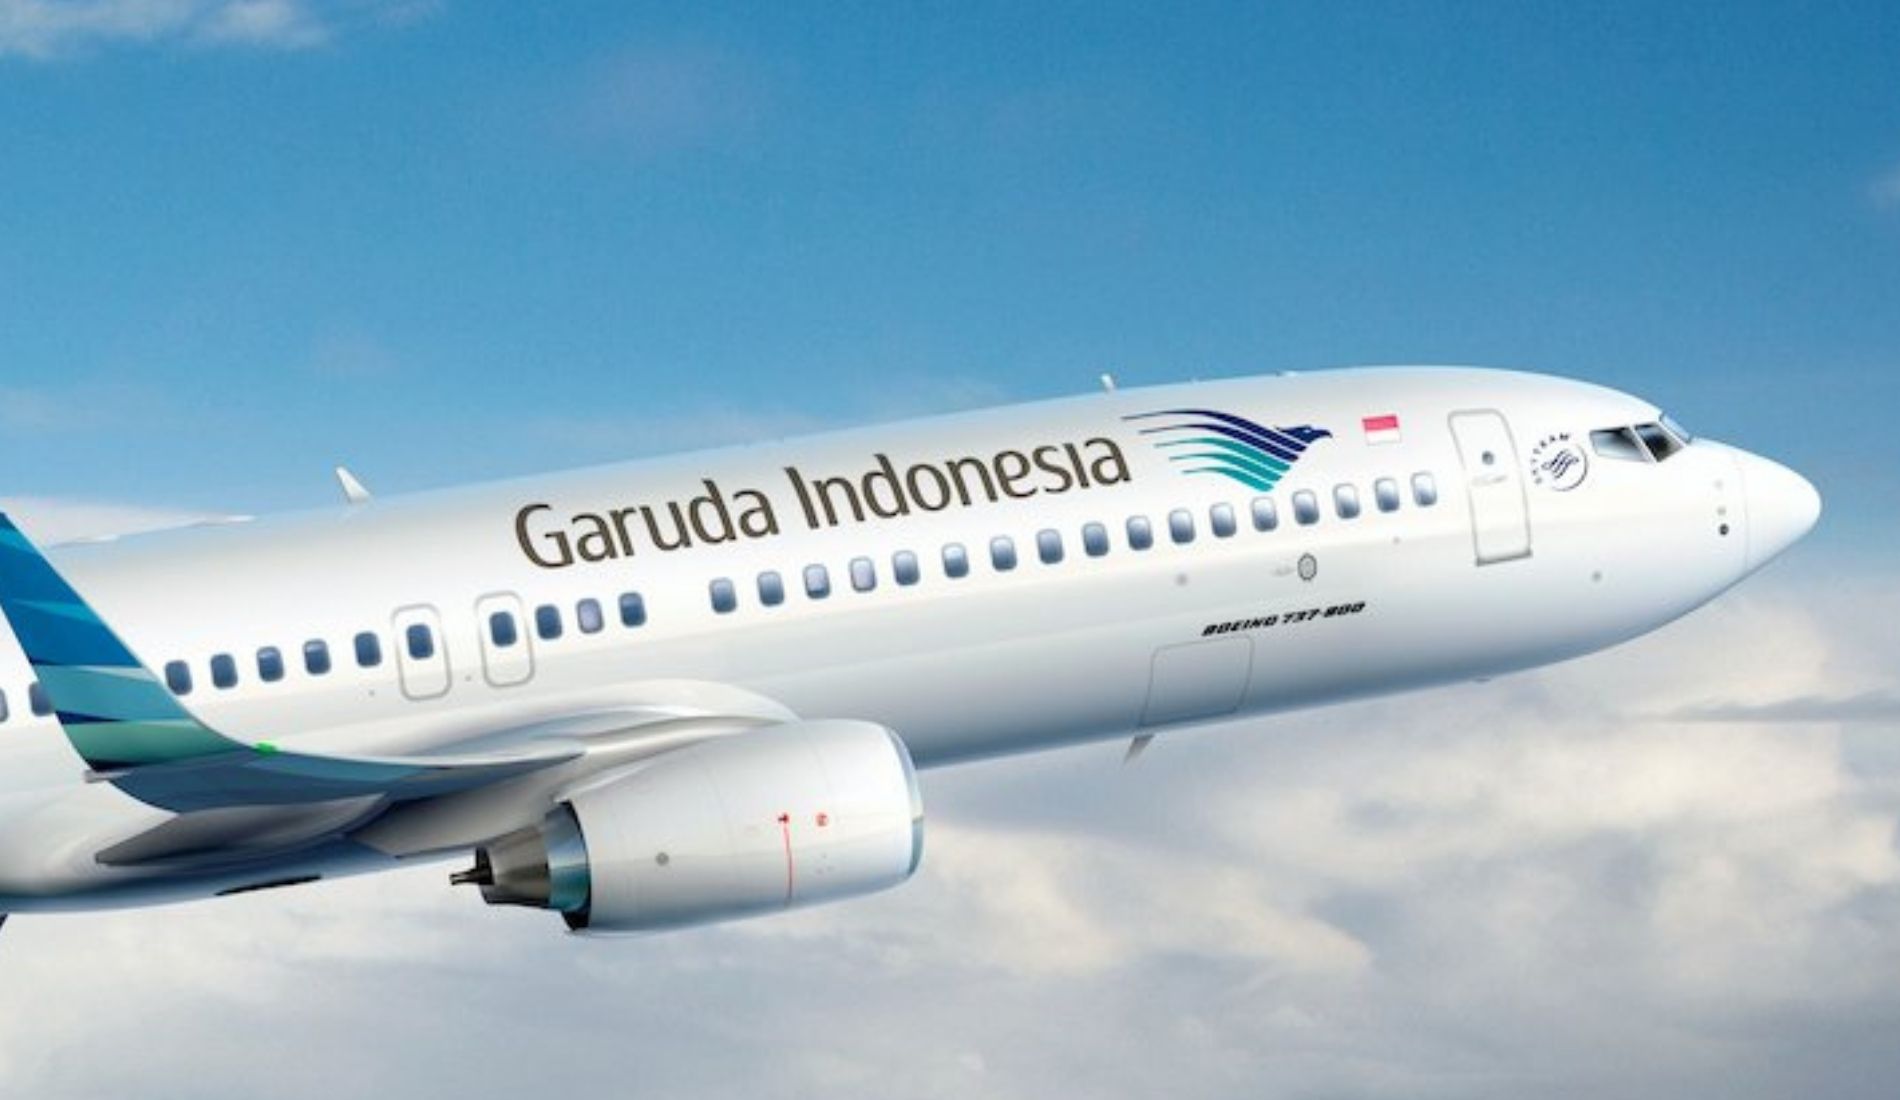 Fakta tentang Garuda Indonesia Illustration Bisnis Muda - Image: Canva